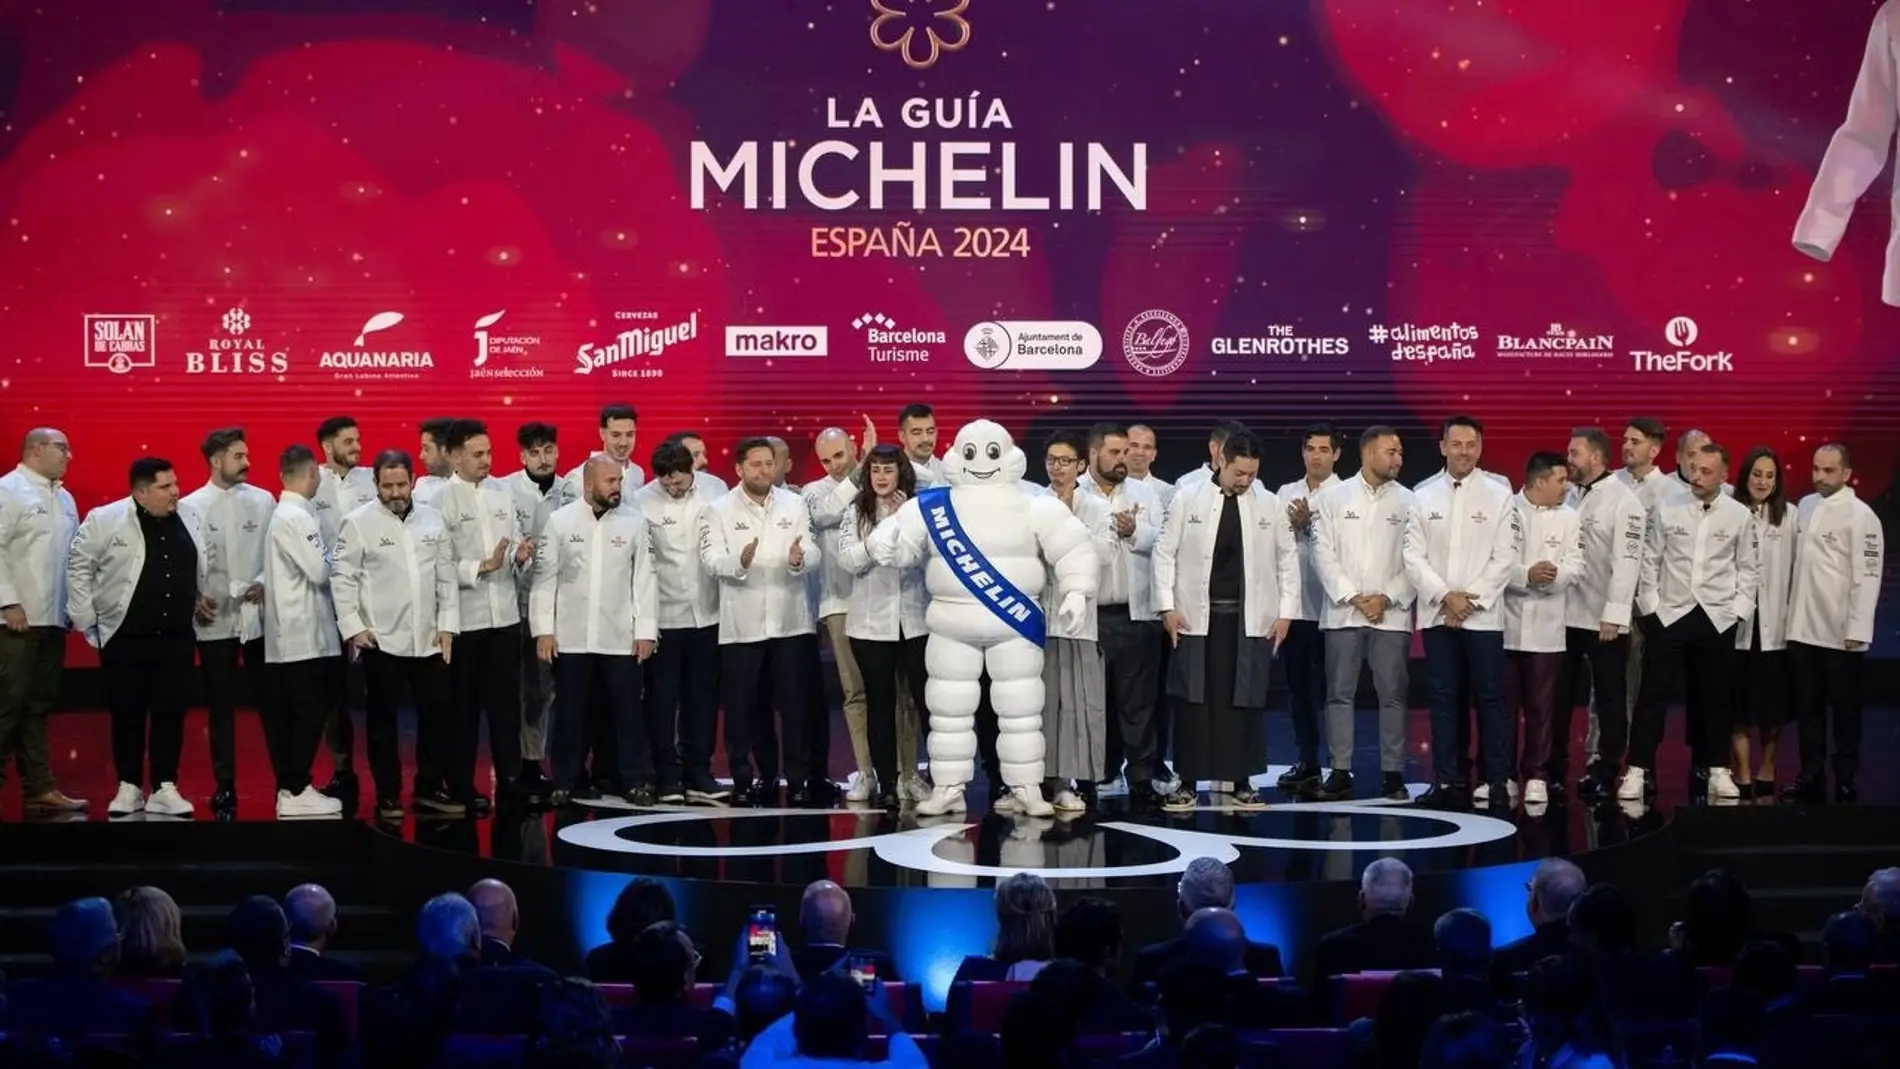 Los premiados con una estrella Michelin en la Guía Michelin 2024